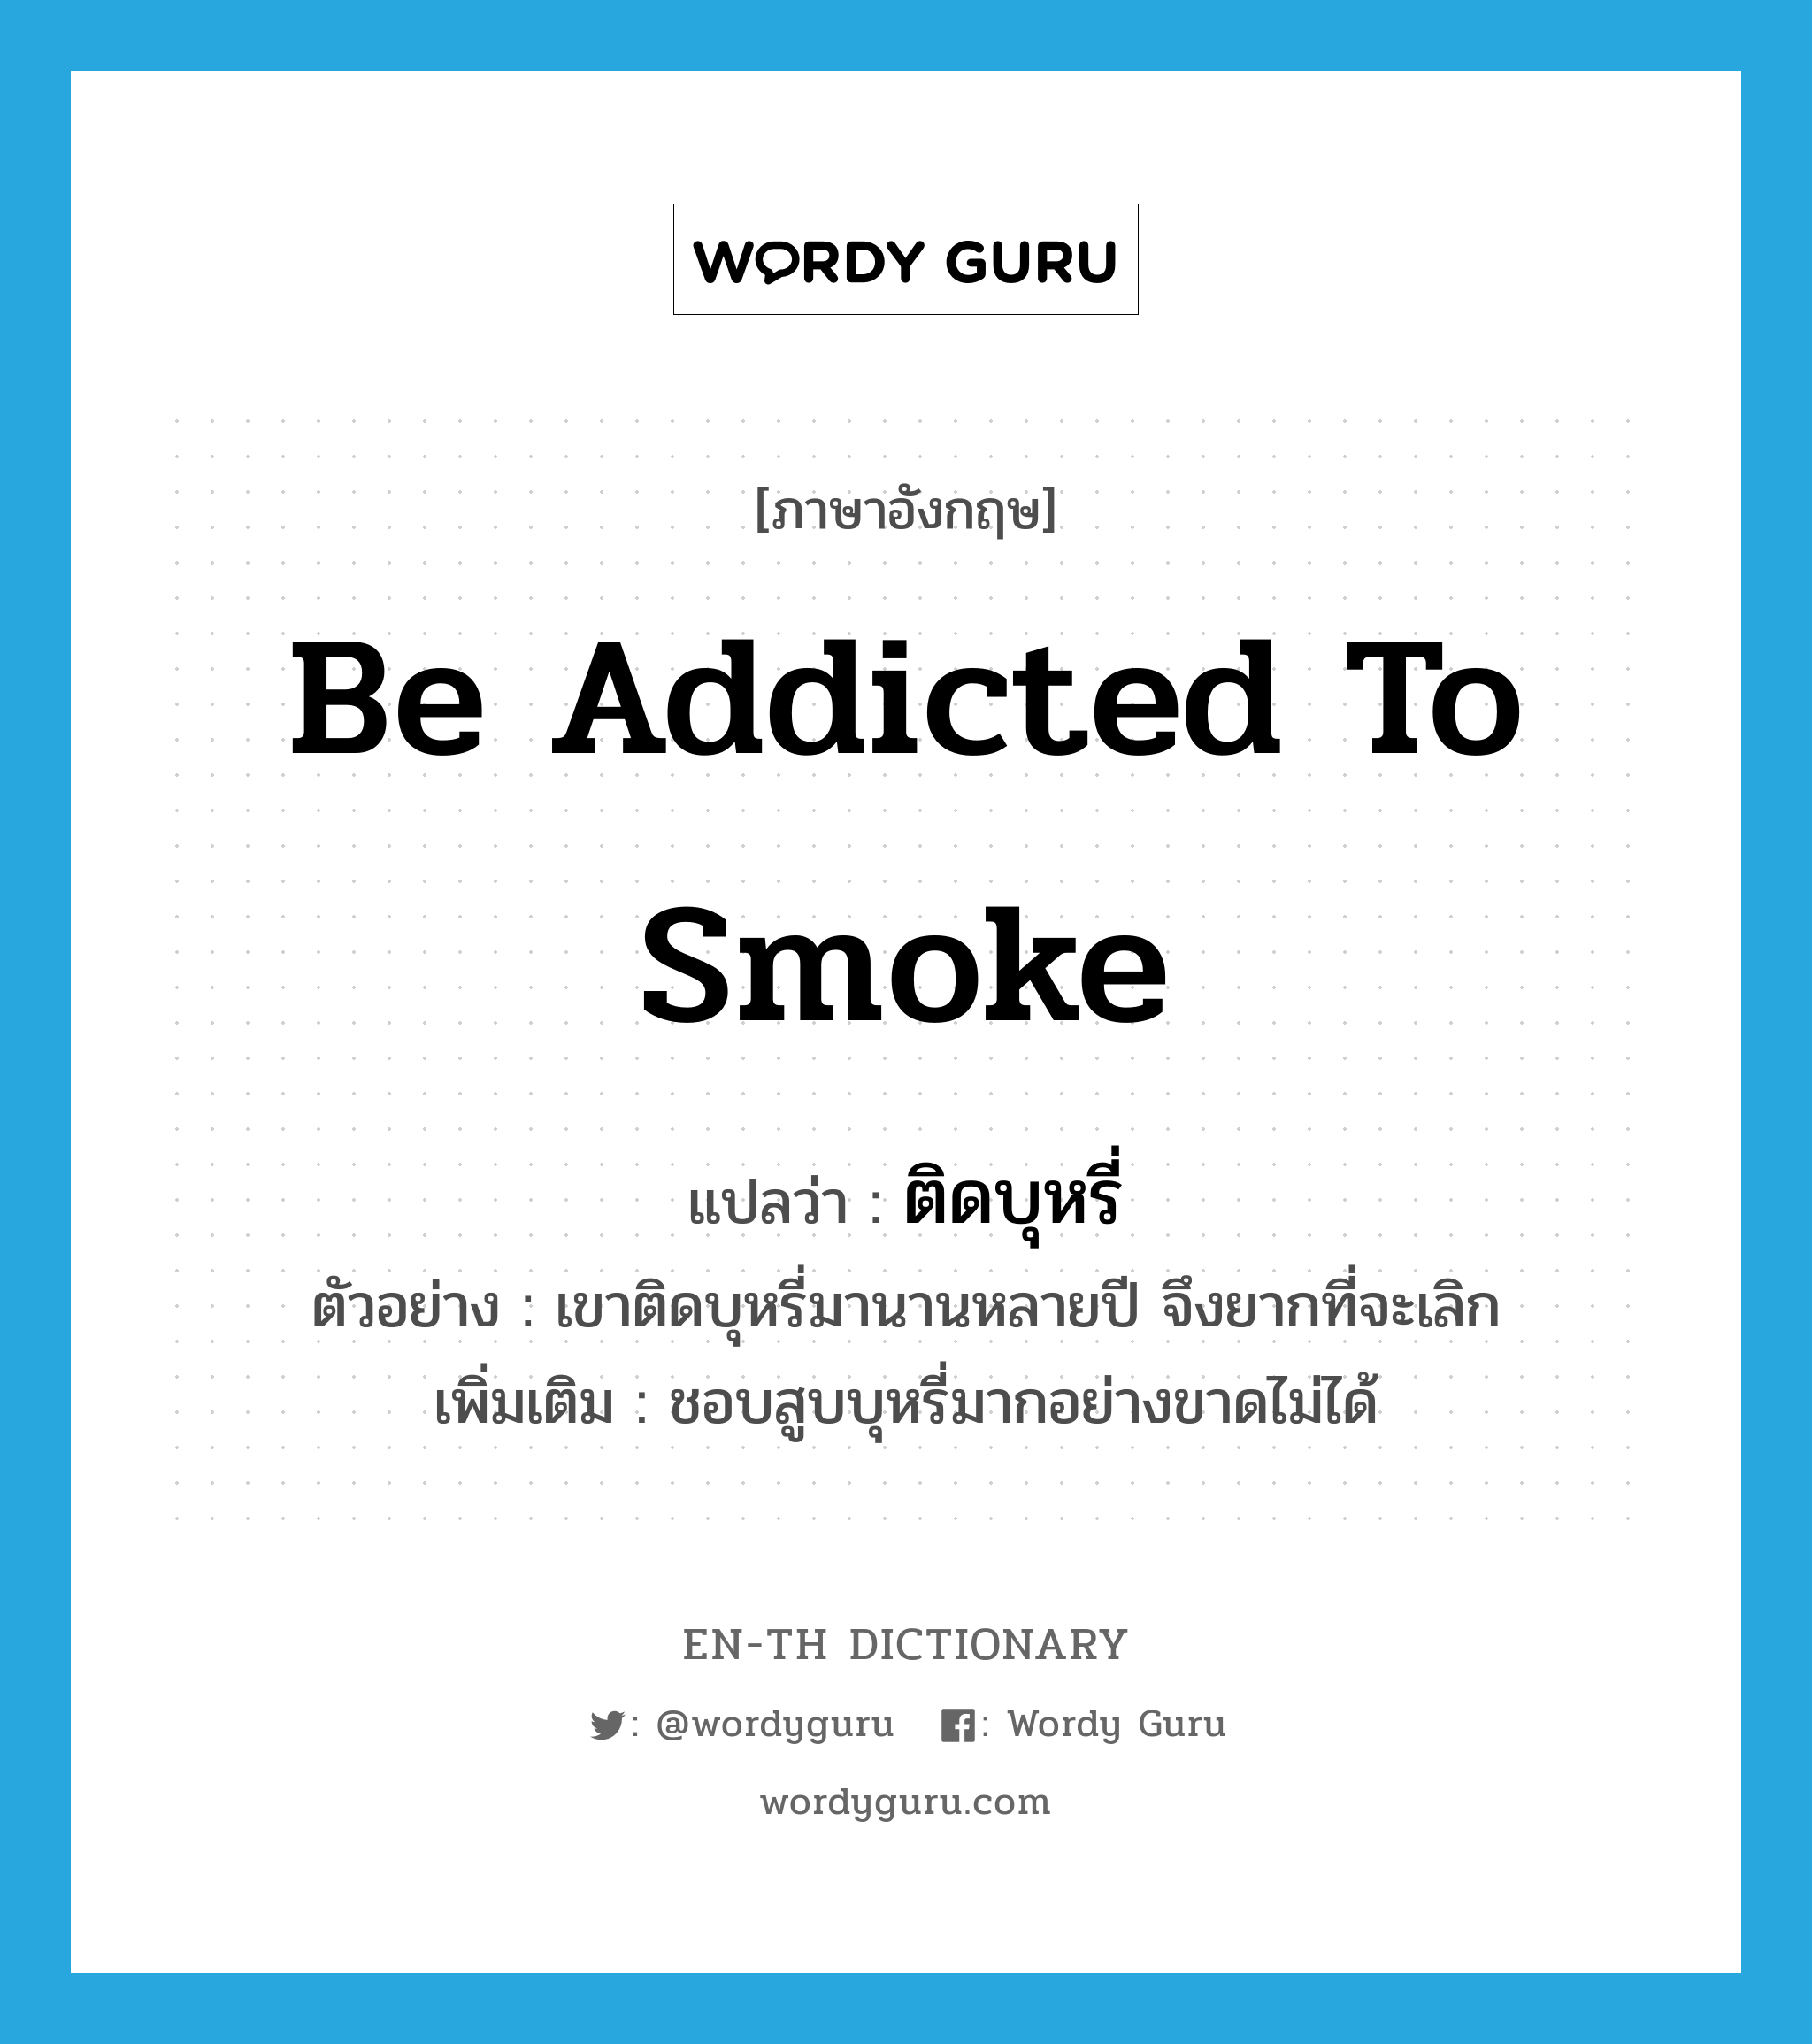 ติดบุหรี่ ภาษาอังกฤษ?, คำศัพท์ภาษาอังกฤษ ติดบุหรี่ แปลว่า be addicted to smoke ประเภท V ตัวอย่าง เขาติดบุหรี่มานานหลายปี จึงยากที่จะเลิก เพิ่มเติม ชอบสูบบุหรี่มากอย่างขาดไม่ได้ หมวด V